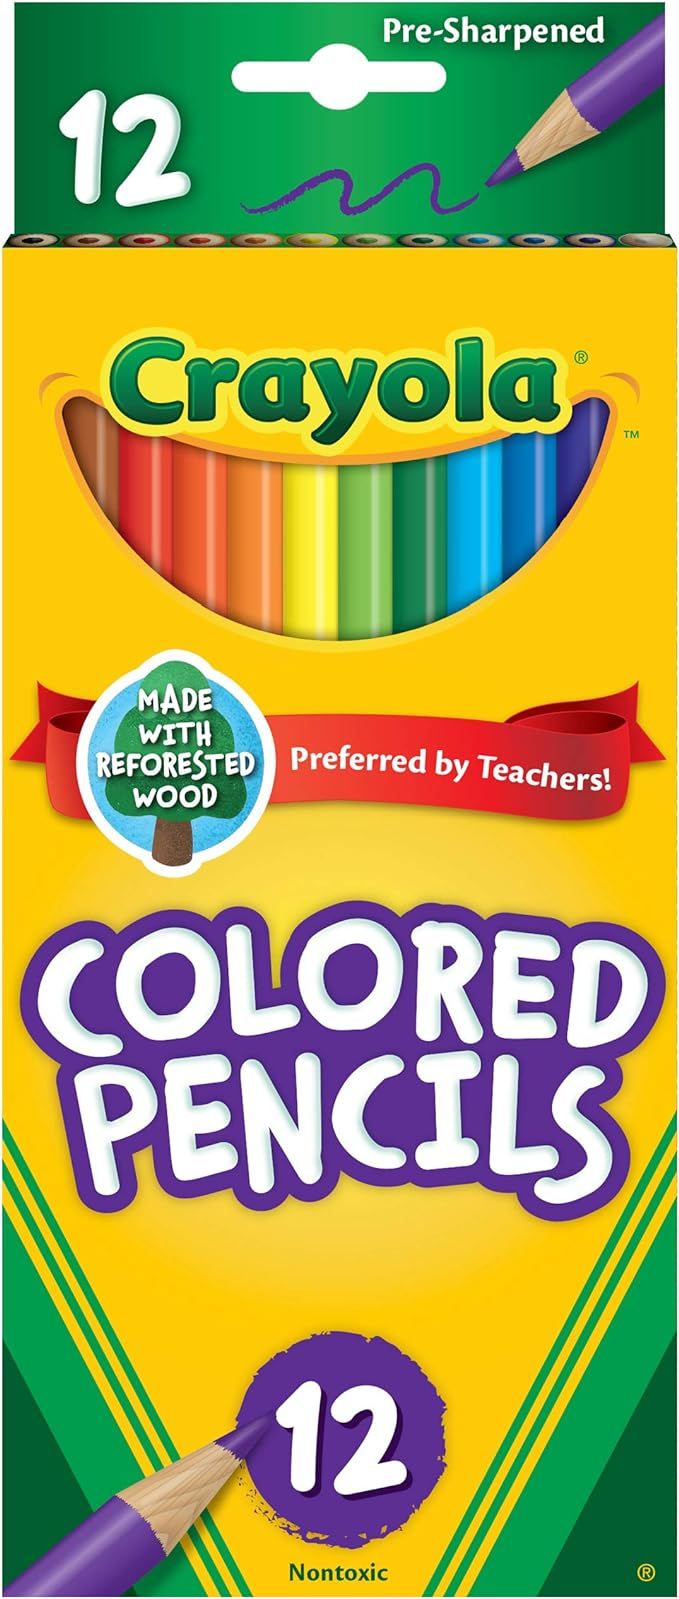 Crayola Colored Pencils, 12 Count, Colored Pencil Set | Amazon (US)